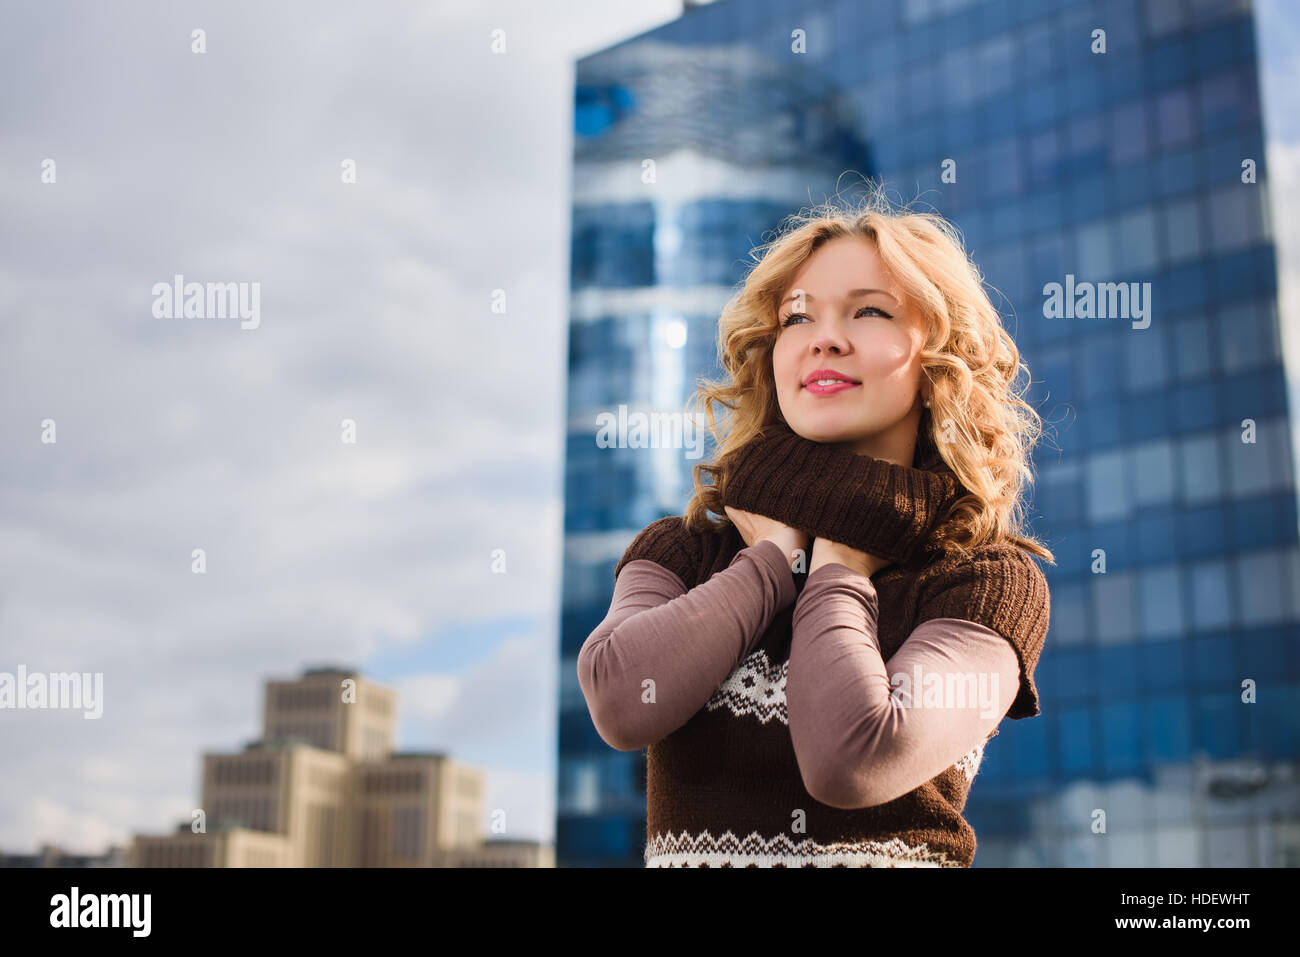 Mädchen posiert auf dem Dach des Einkaufszentrums. Stadt, modernes Gebäude im Hintergrund. Mädchen, gekleidet in braunen Pullover mit einer Christbaumkugel. Stockfoto